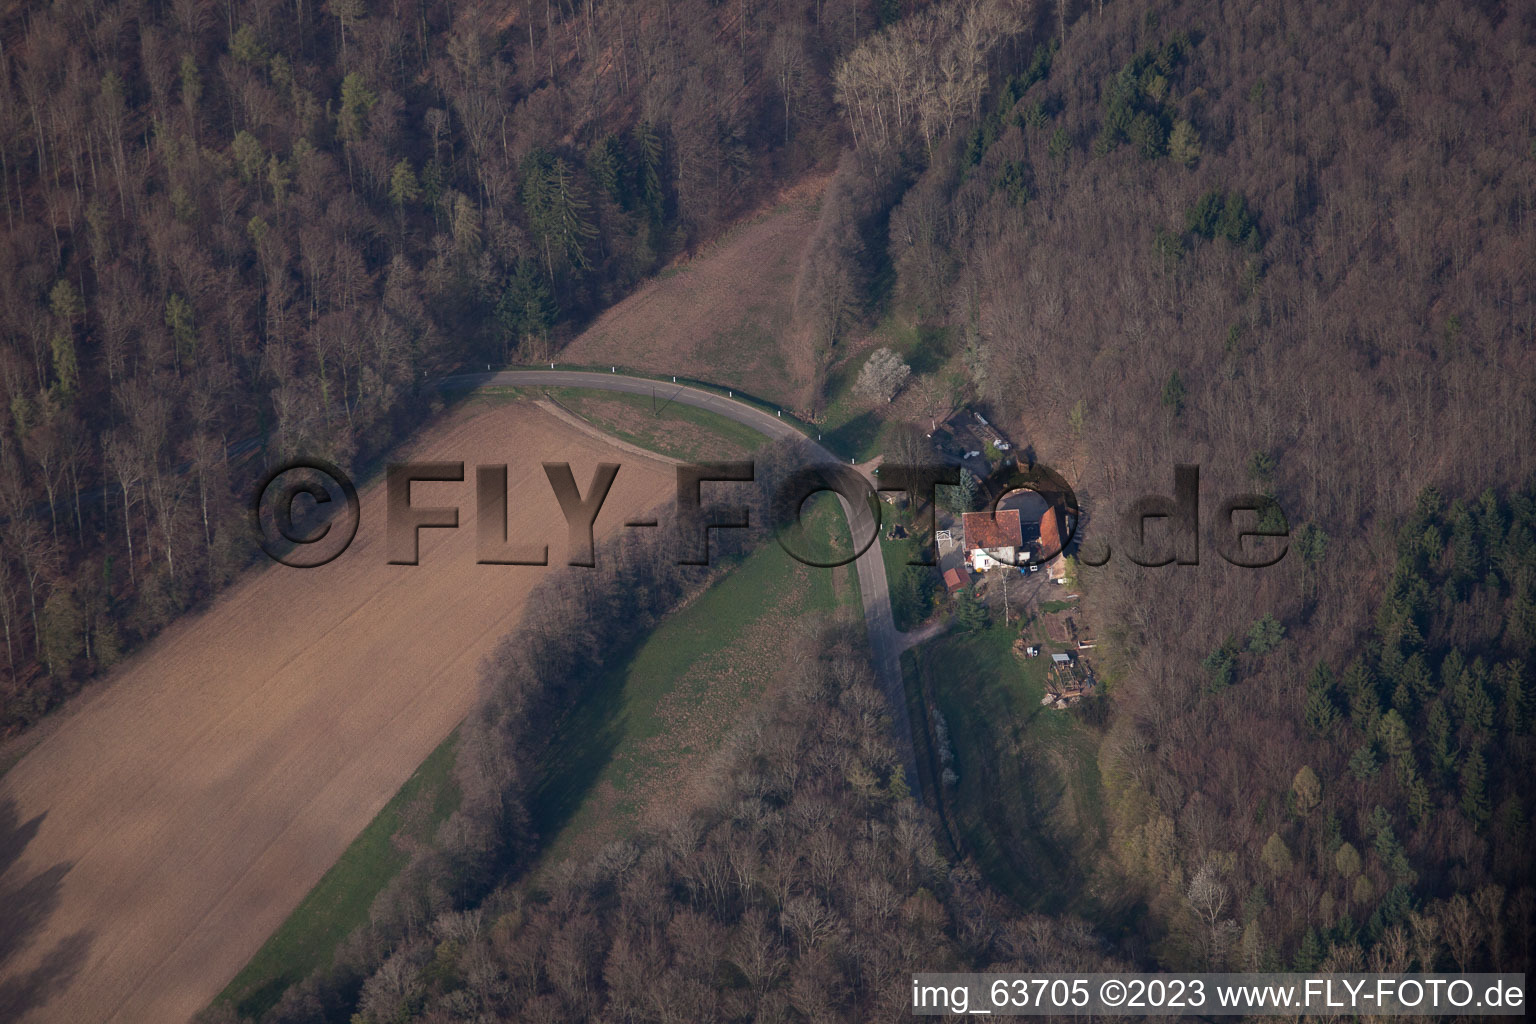 Nehwiller-près-Wœrth dans le département Bas Rhin, France d'un drone